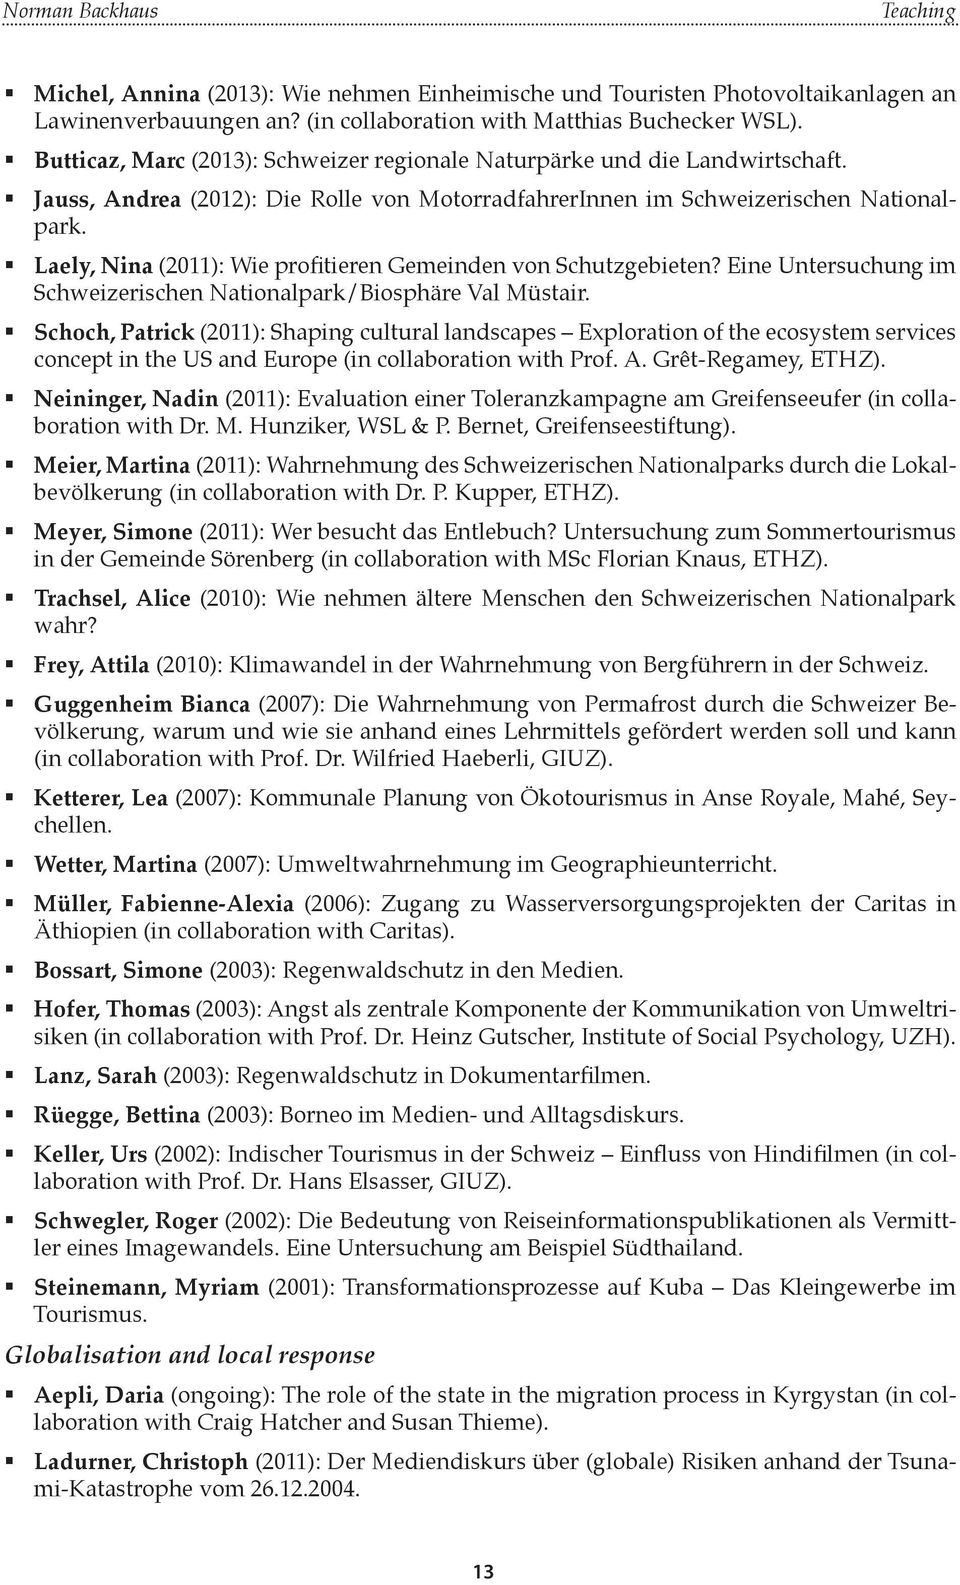 Laely, Nina (2011): Wie profitieren Gemeinden von Schutzgebieten? Eine Untersuchung im Schweizerischen Nationalpark/Biosphäre Val Müstair.